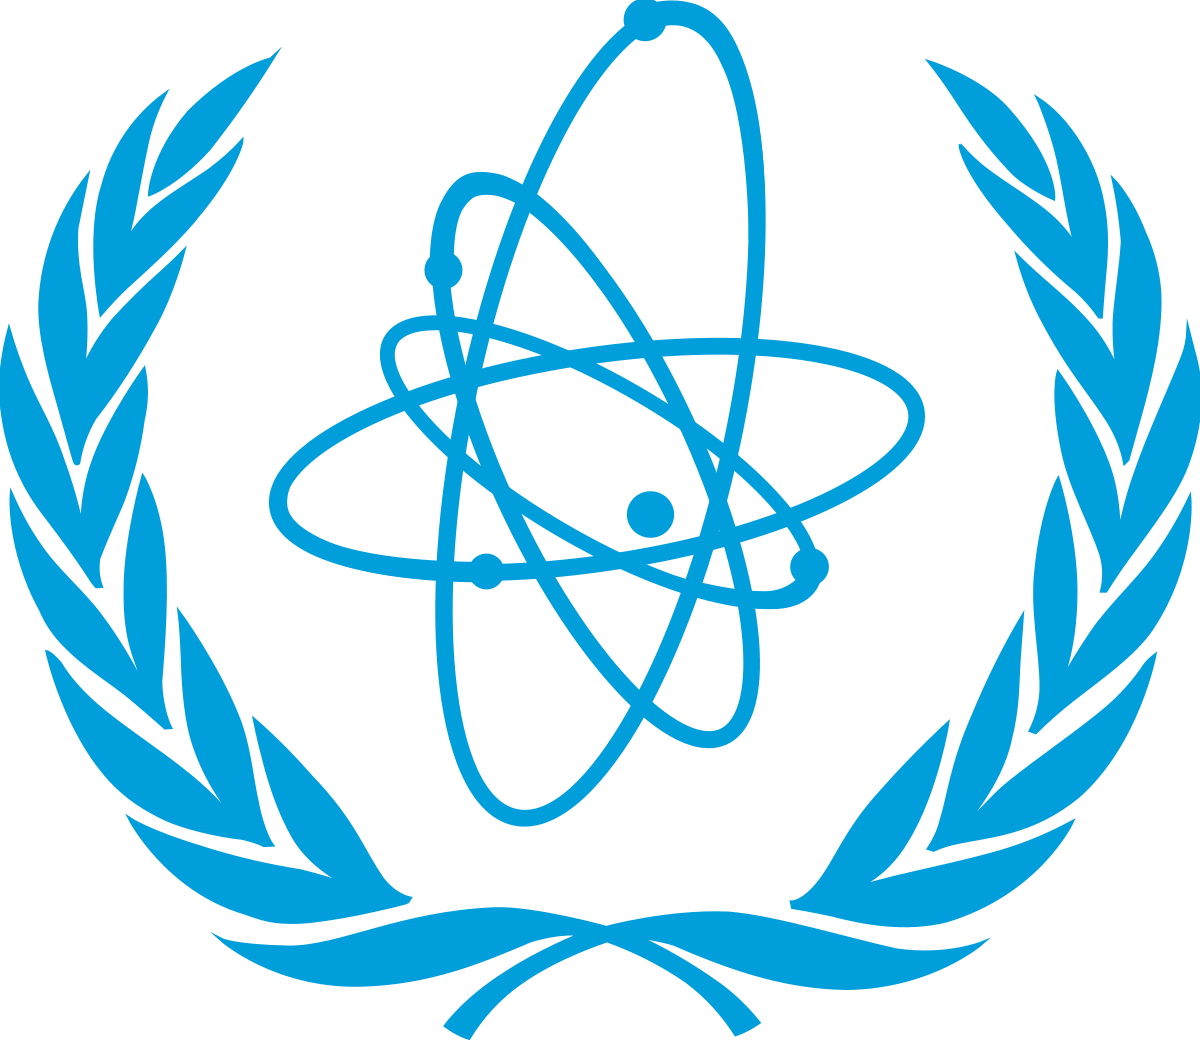 Организация магатэ занимается. Международное агентство по атомной энергии (МАГАТЭ). Международное агентство по атомной энергии МАГАТЭ эмблема. МАГАТЭ это Международная организация. Международная организация МАГАТЭ эмблема.